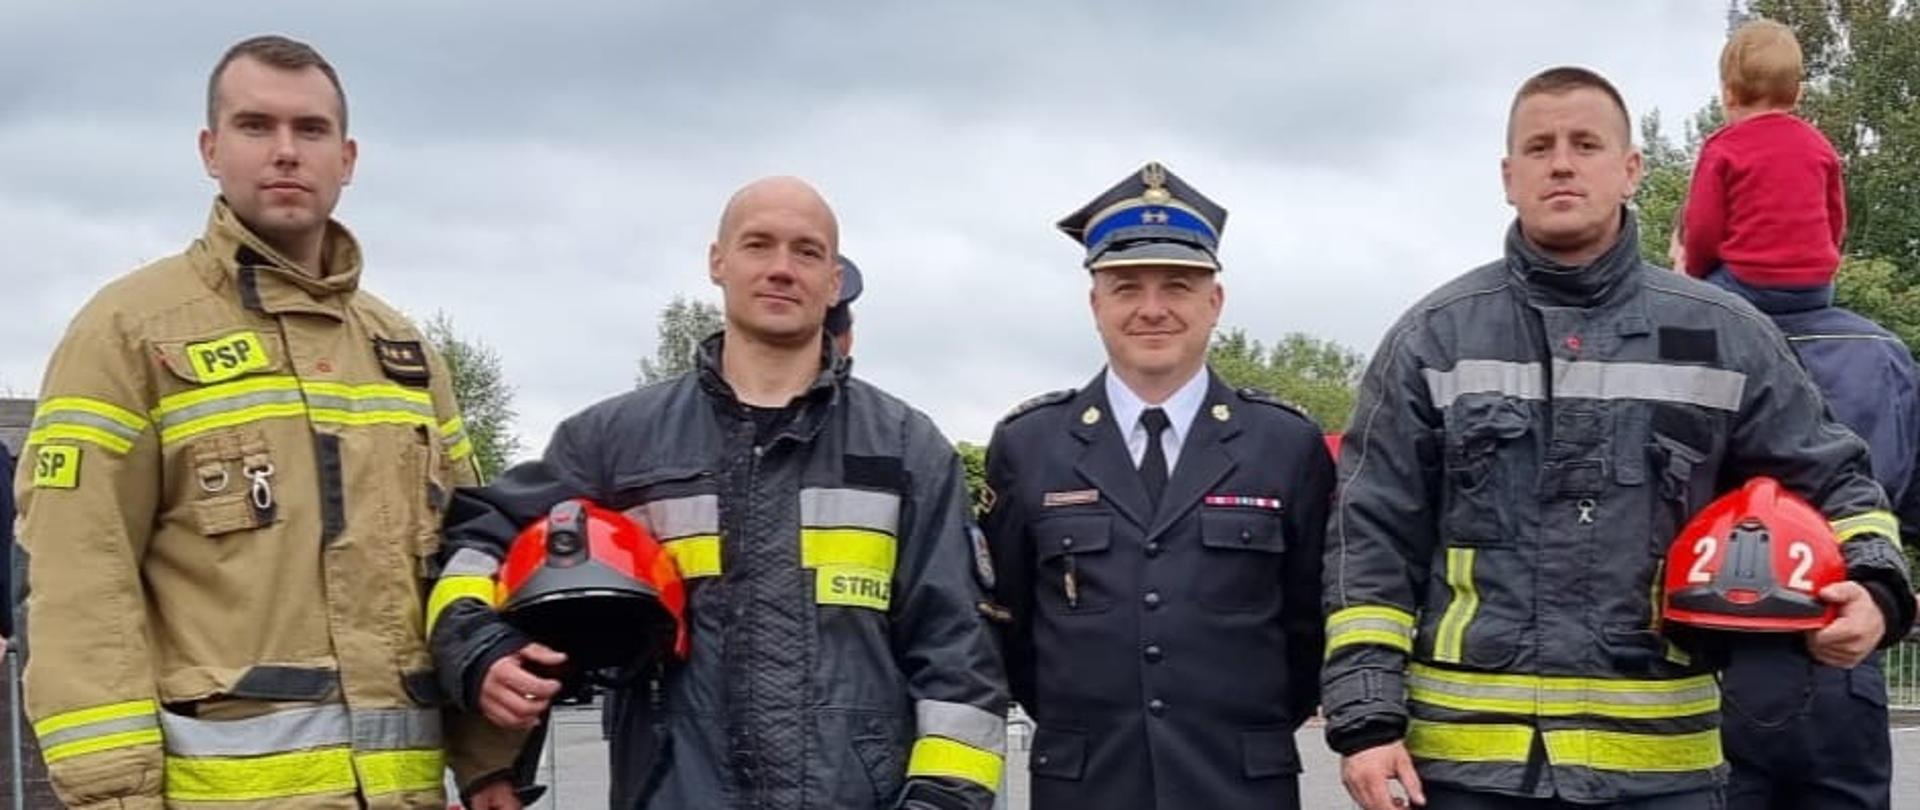 Na zdjęciu widać czterech strażaków, trzech z nich w umundurowaniu bojowym, jeden z nich w umundurowaniu galowym. Zdjęcie wykonane podczas zawodów TFA w Czechach w dzień. 